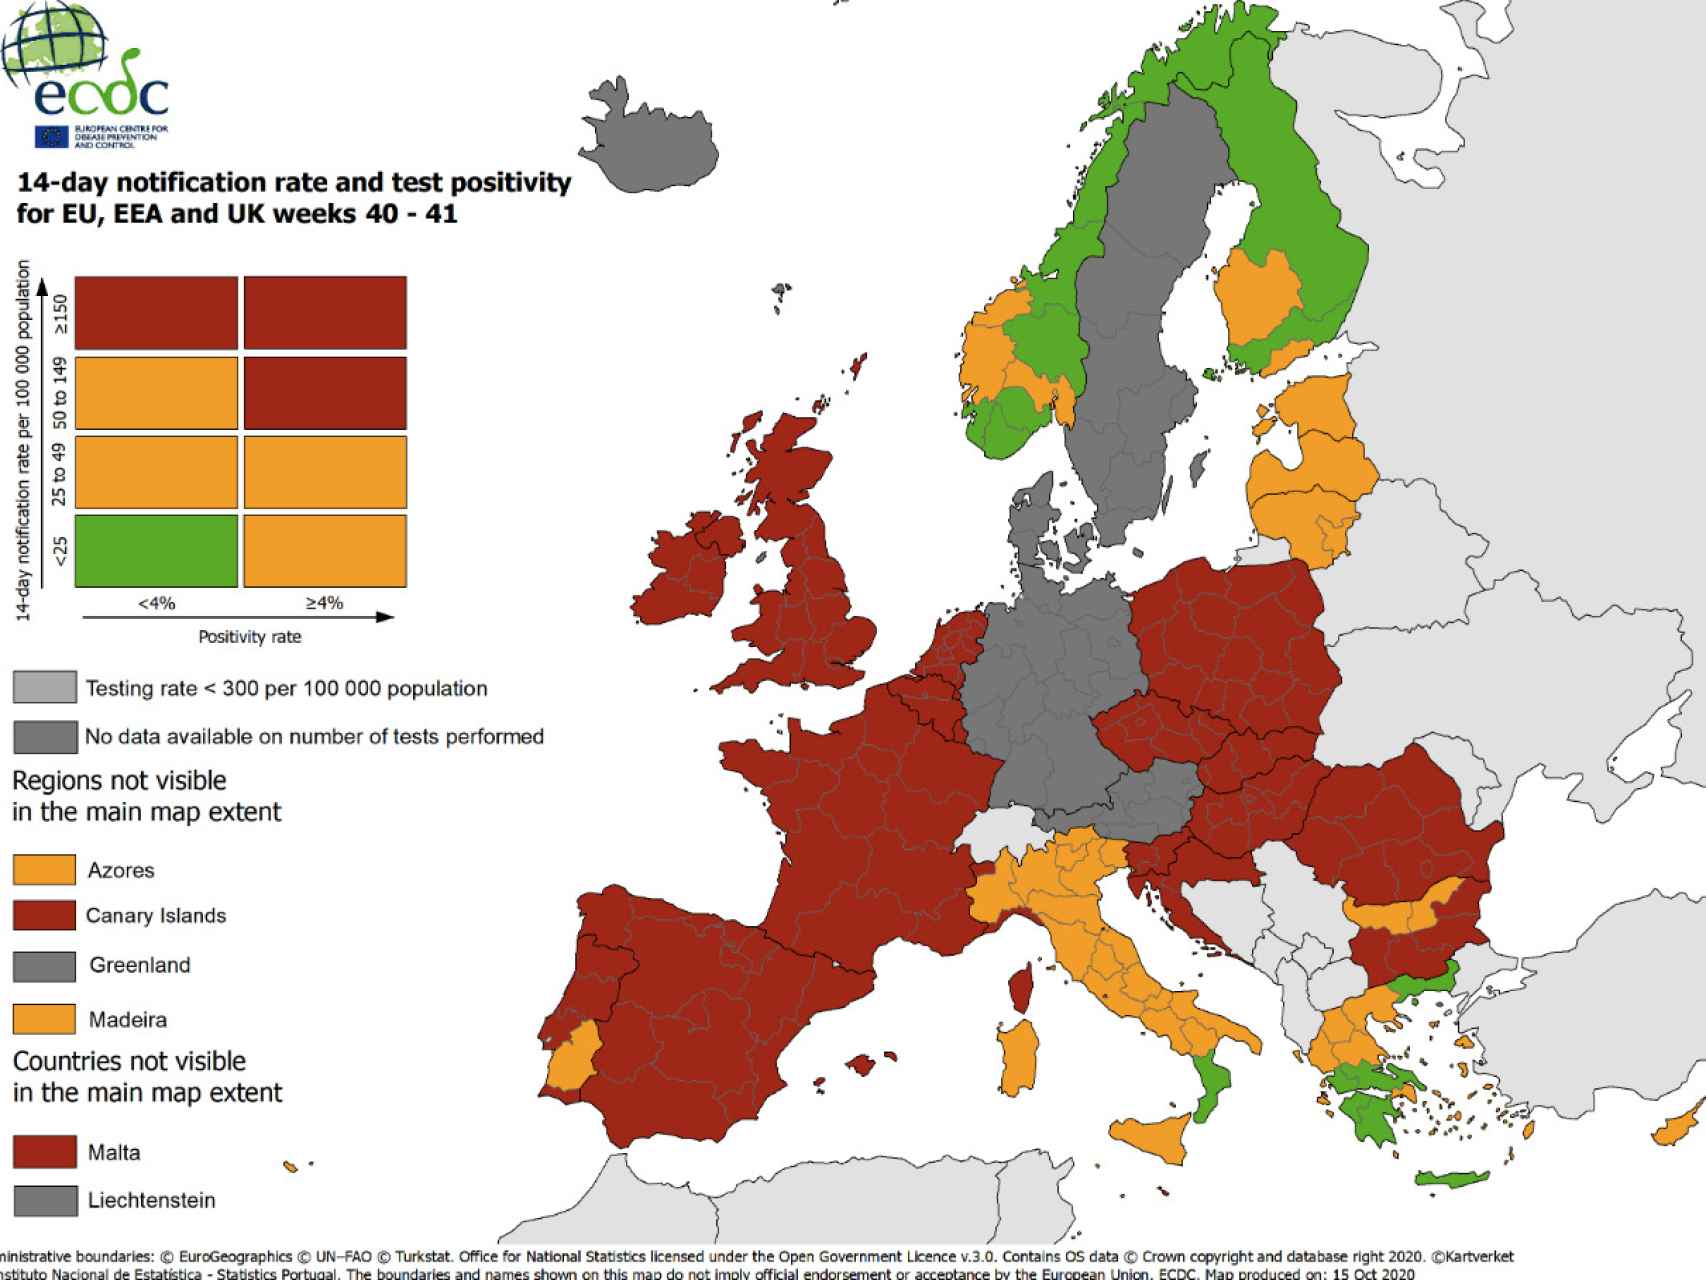 Mapa del Centro Europeo para la Prevención y Control de las Enfermedades.